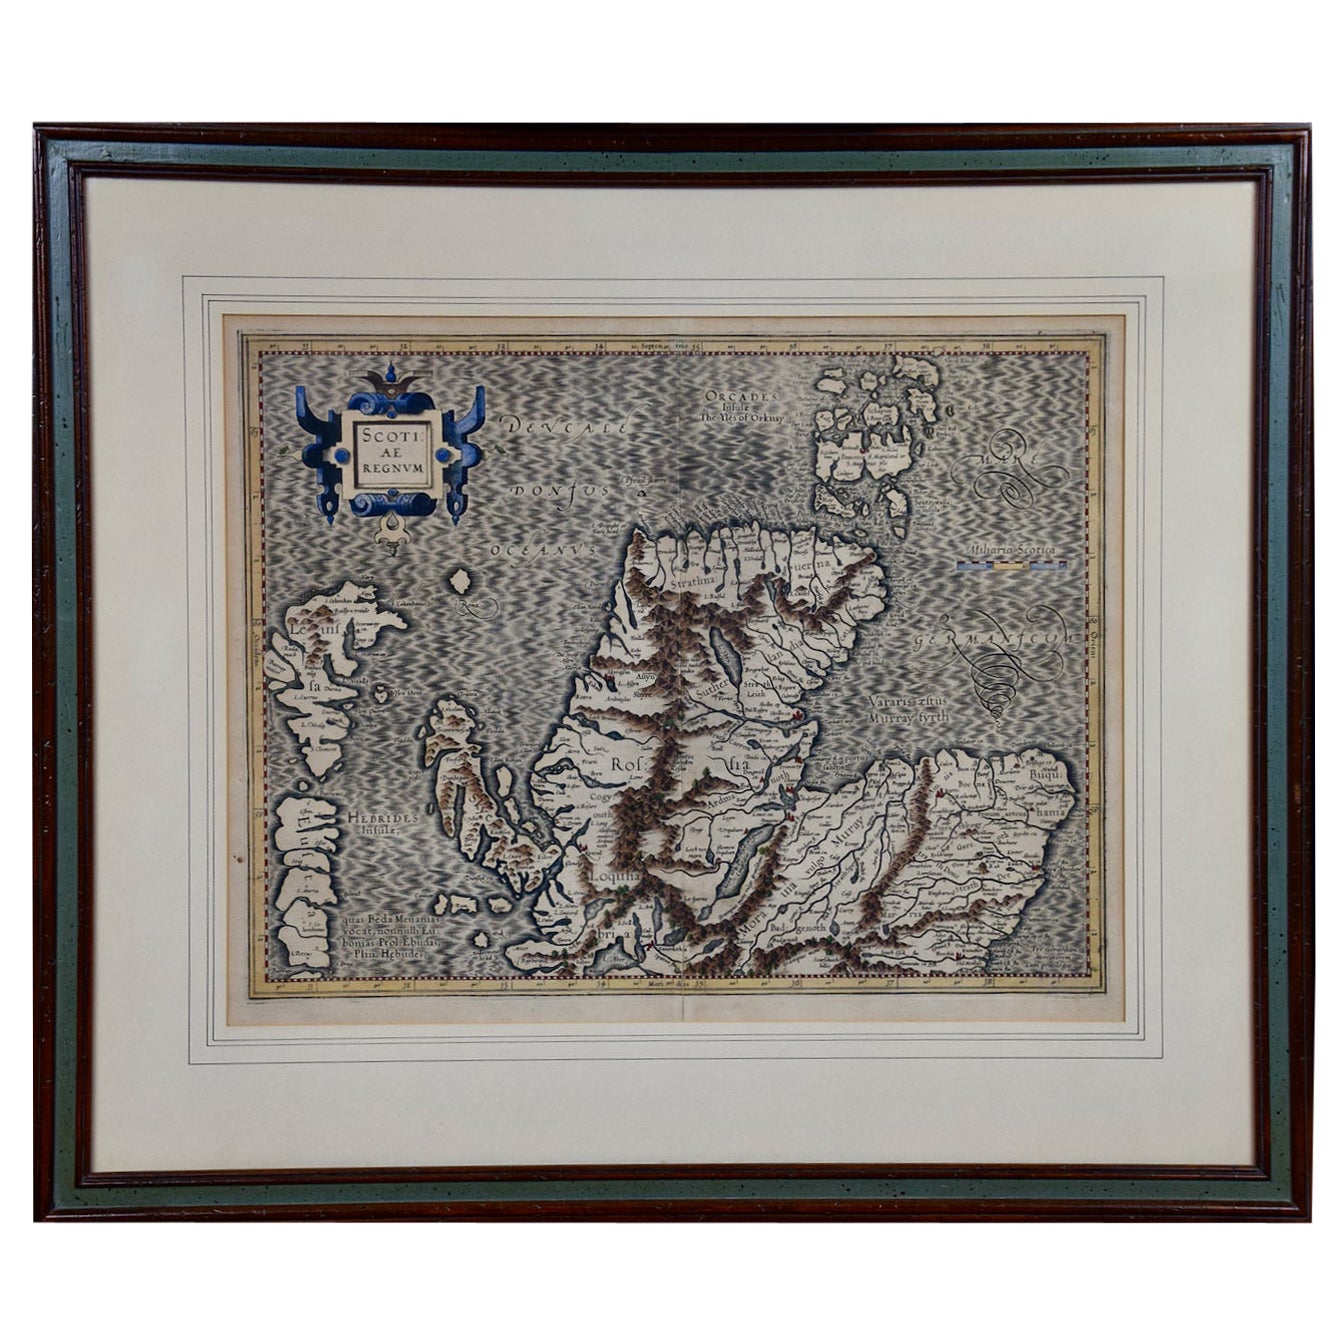 Nordschottland: Eine handkolorierte Karte von Mercator aus dem 16. Jahrhundert